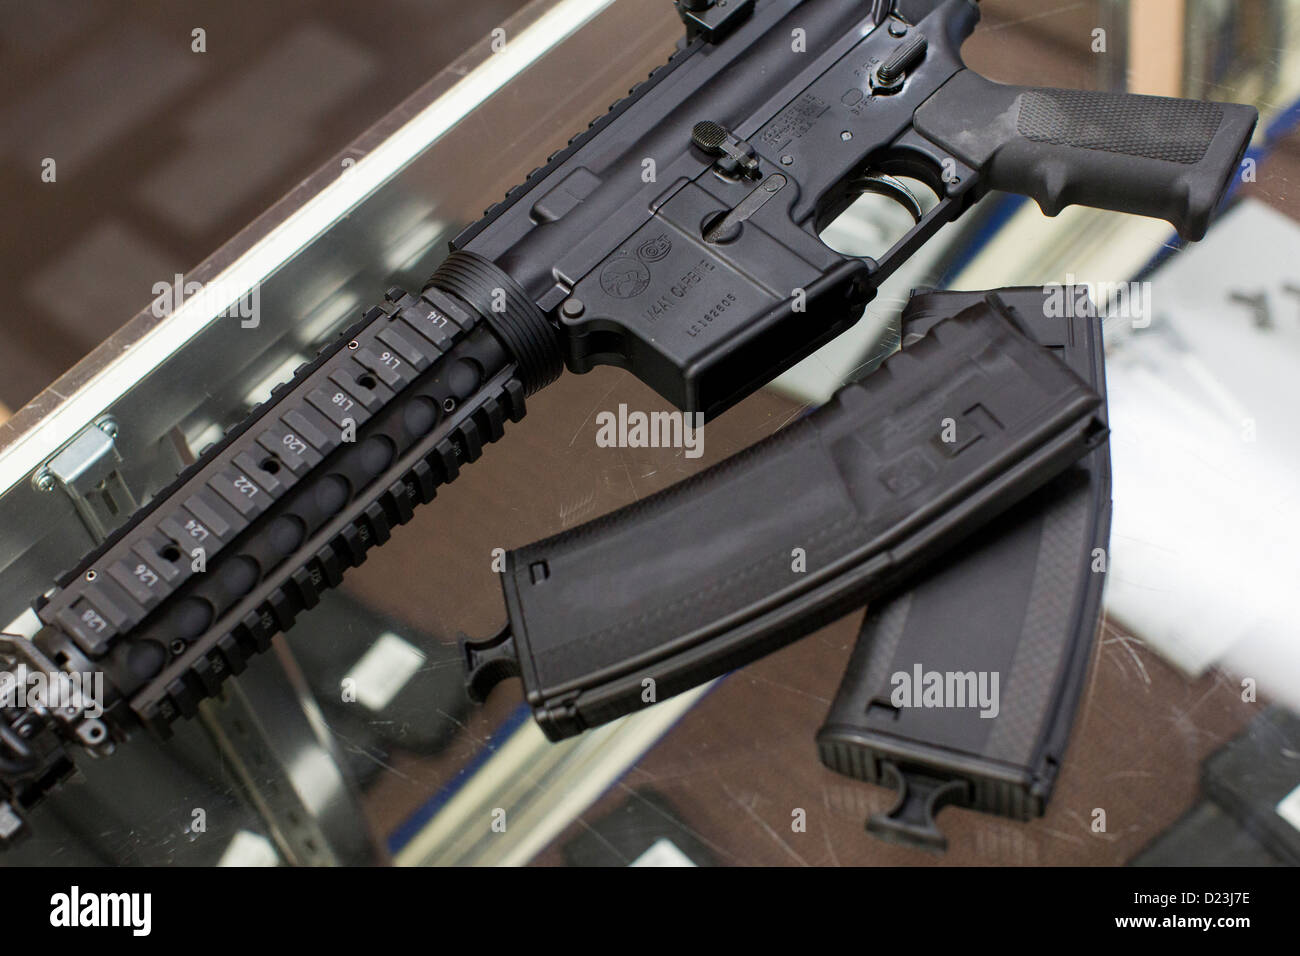 Una defensa Colt M4A1 Carbine rifle de asalto en la pantalla en una armería con alta capacidad 30 mesas revistas. Foto de stock